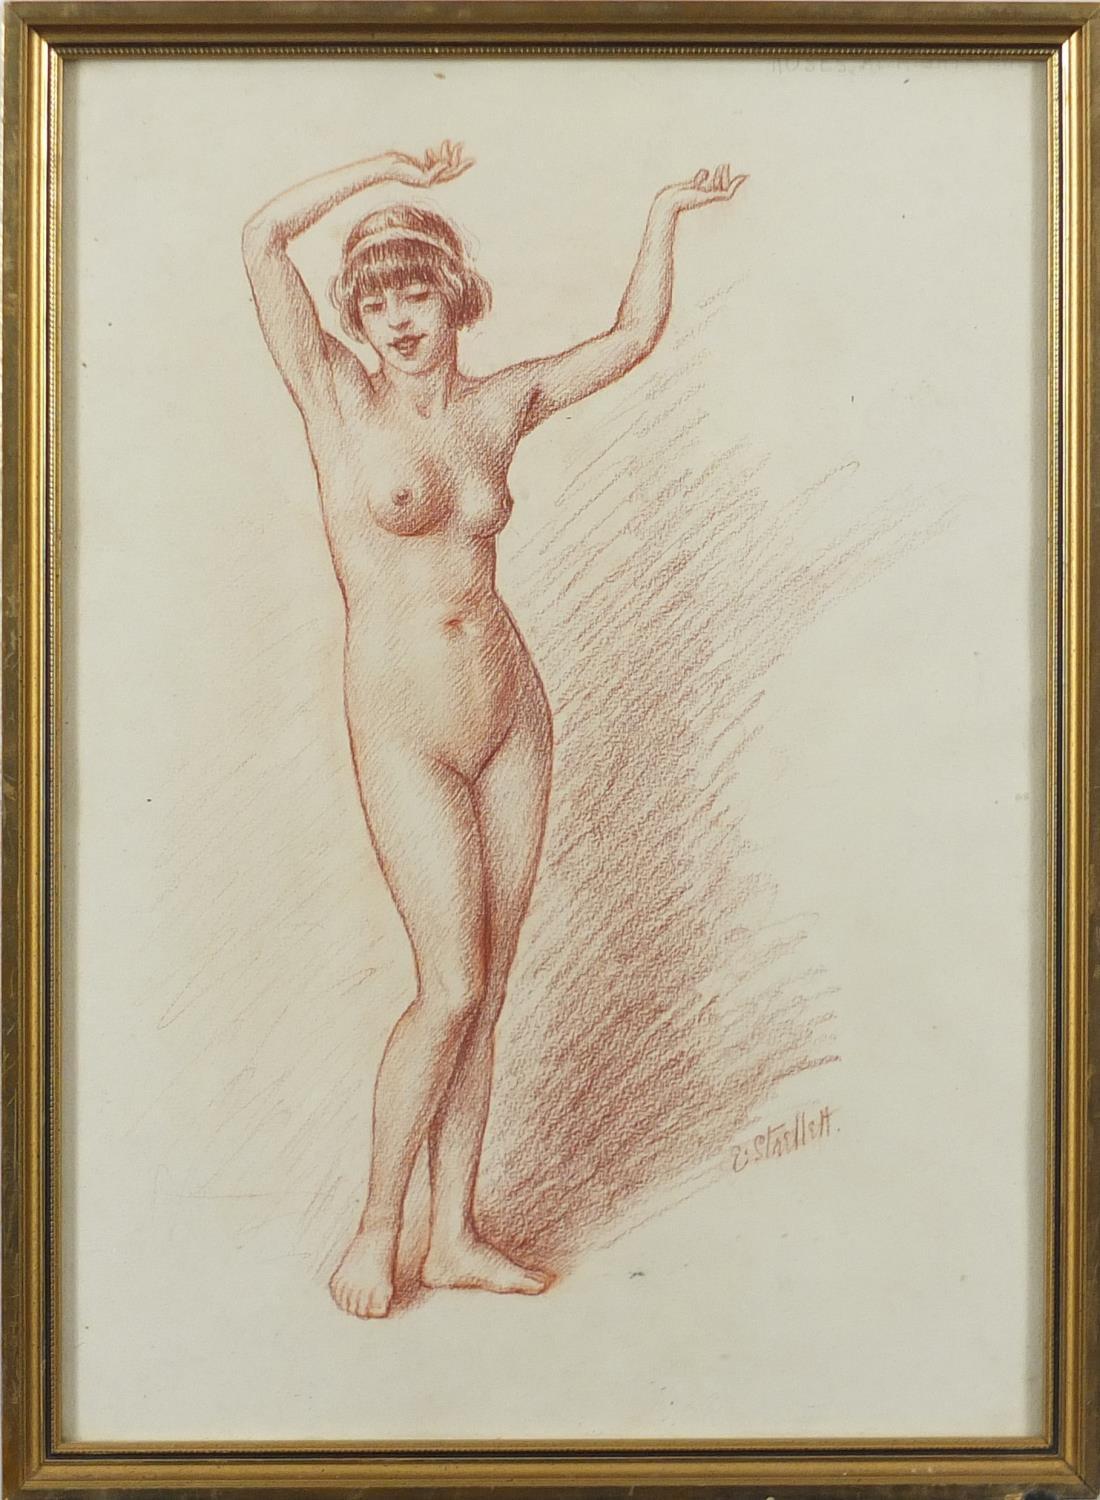 Ephrail Strellett - Standing nude female, Sanguine chalk drawing on paper, framed, 37cm x 27cm : For - Image 2 of 4